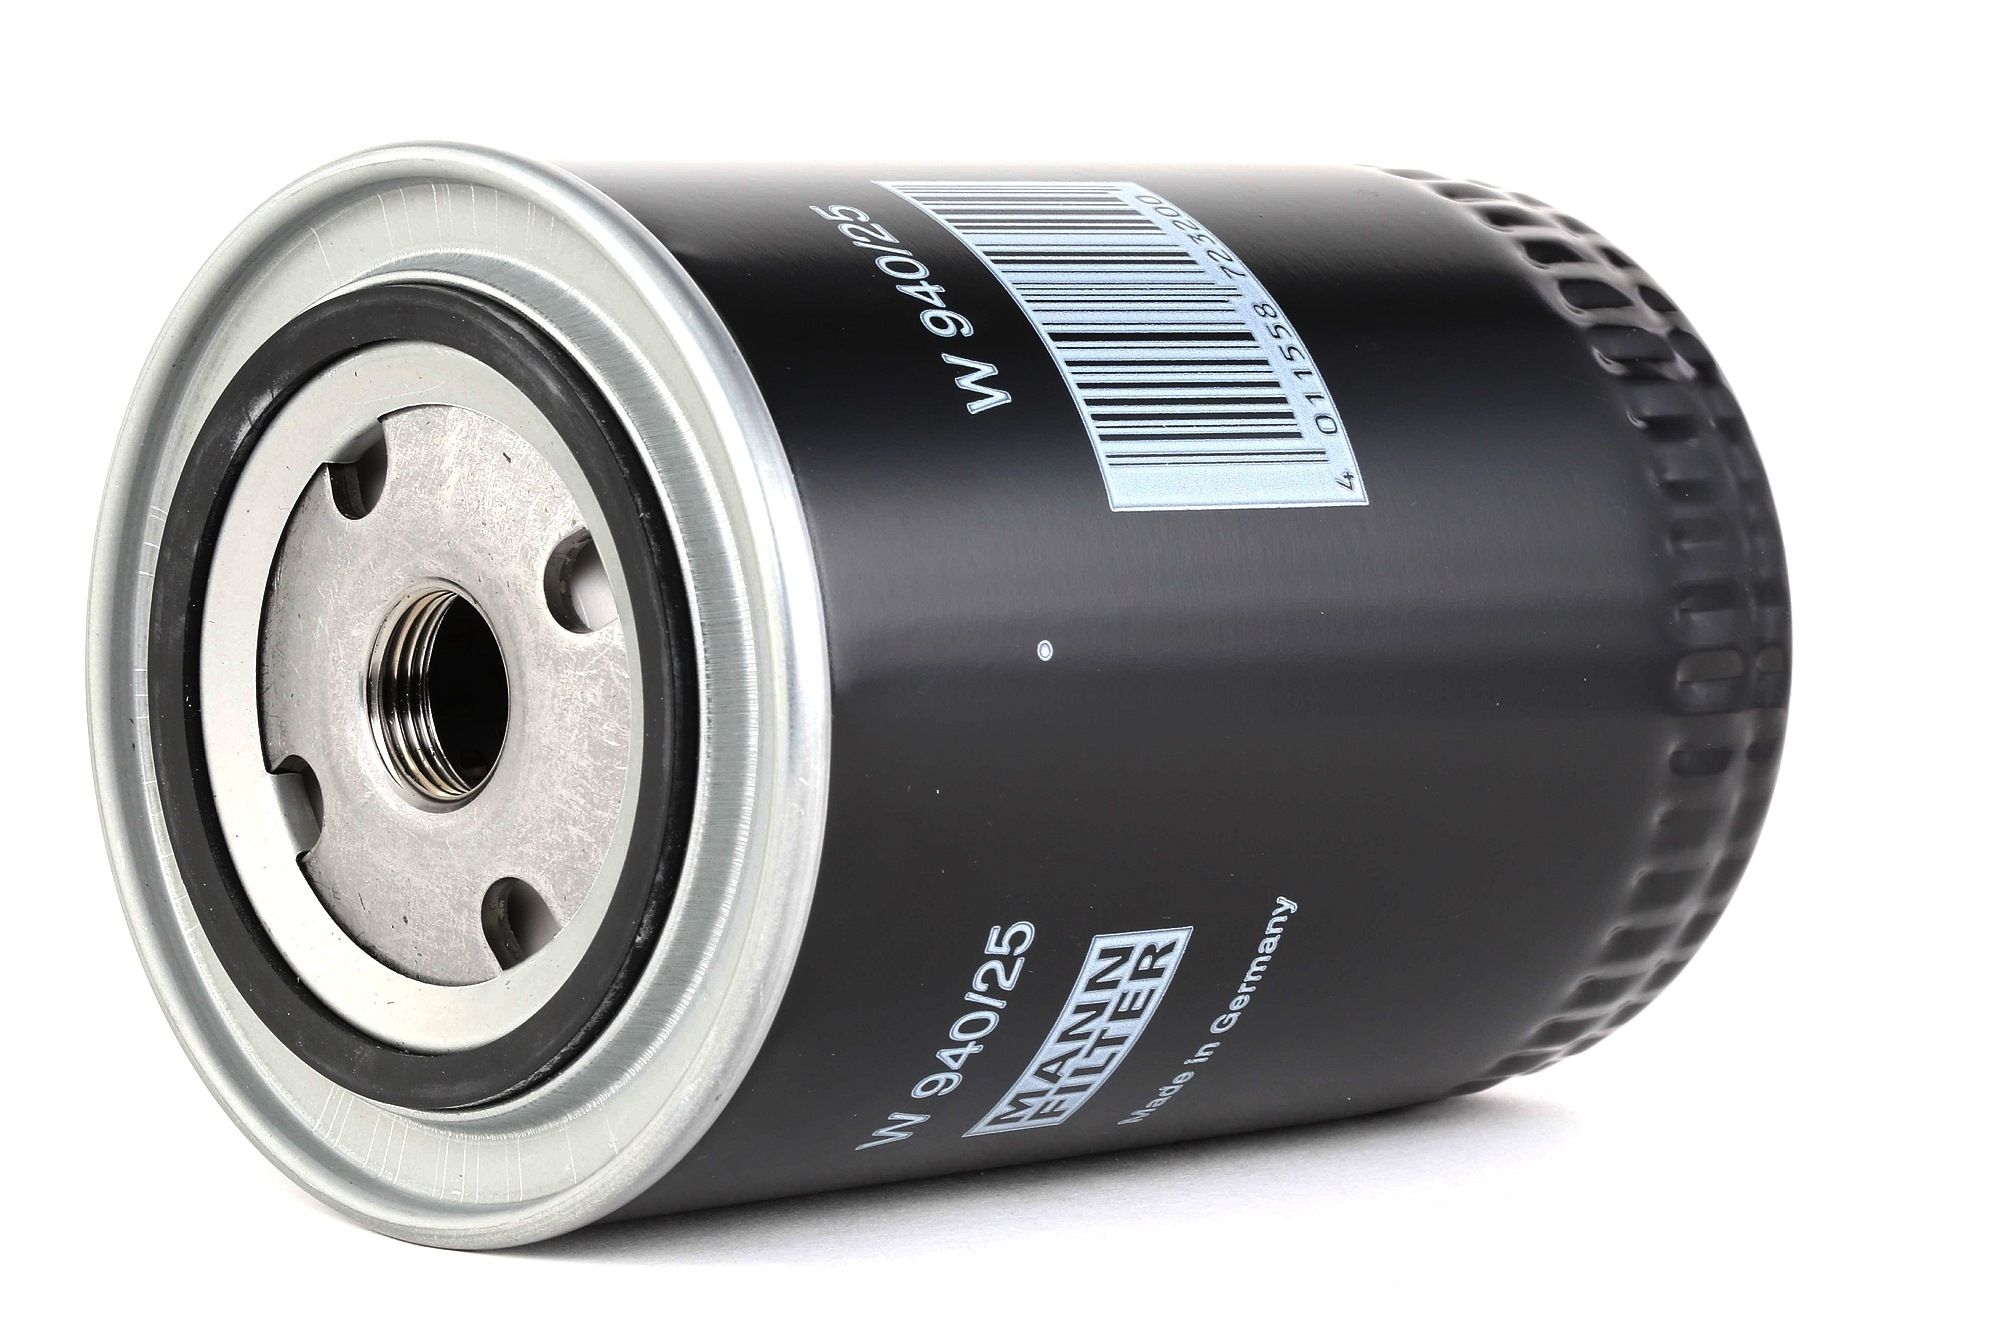 Köp MANN-FILTER W 940/25 - Filter till Volvo: Skruvfilter, med en backsperrventil Innerdiameter 2: 62mm, Ø: 93mm, Ytterdiameter 2: 71mm, Ø: 93mm, H: 142mm